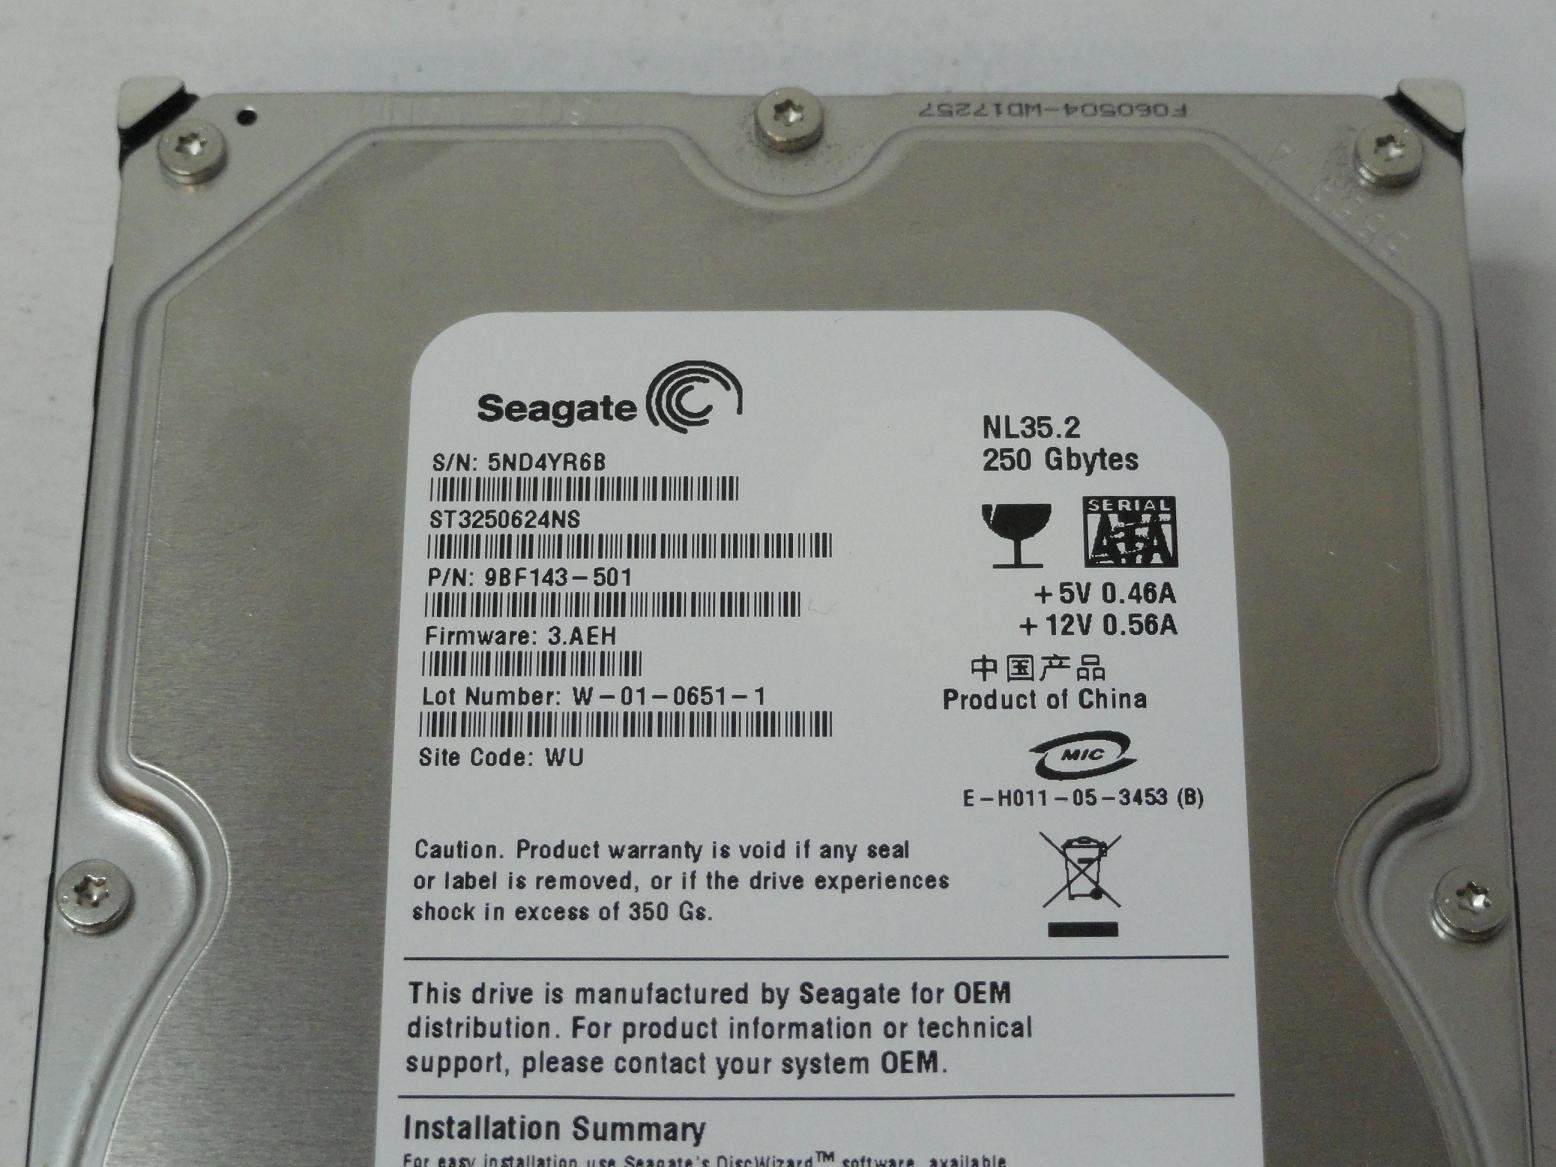 PR11210_9BF143-501_Seagate 250GB SATA 7200rpm 3.5in HDD - Image3